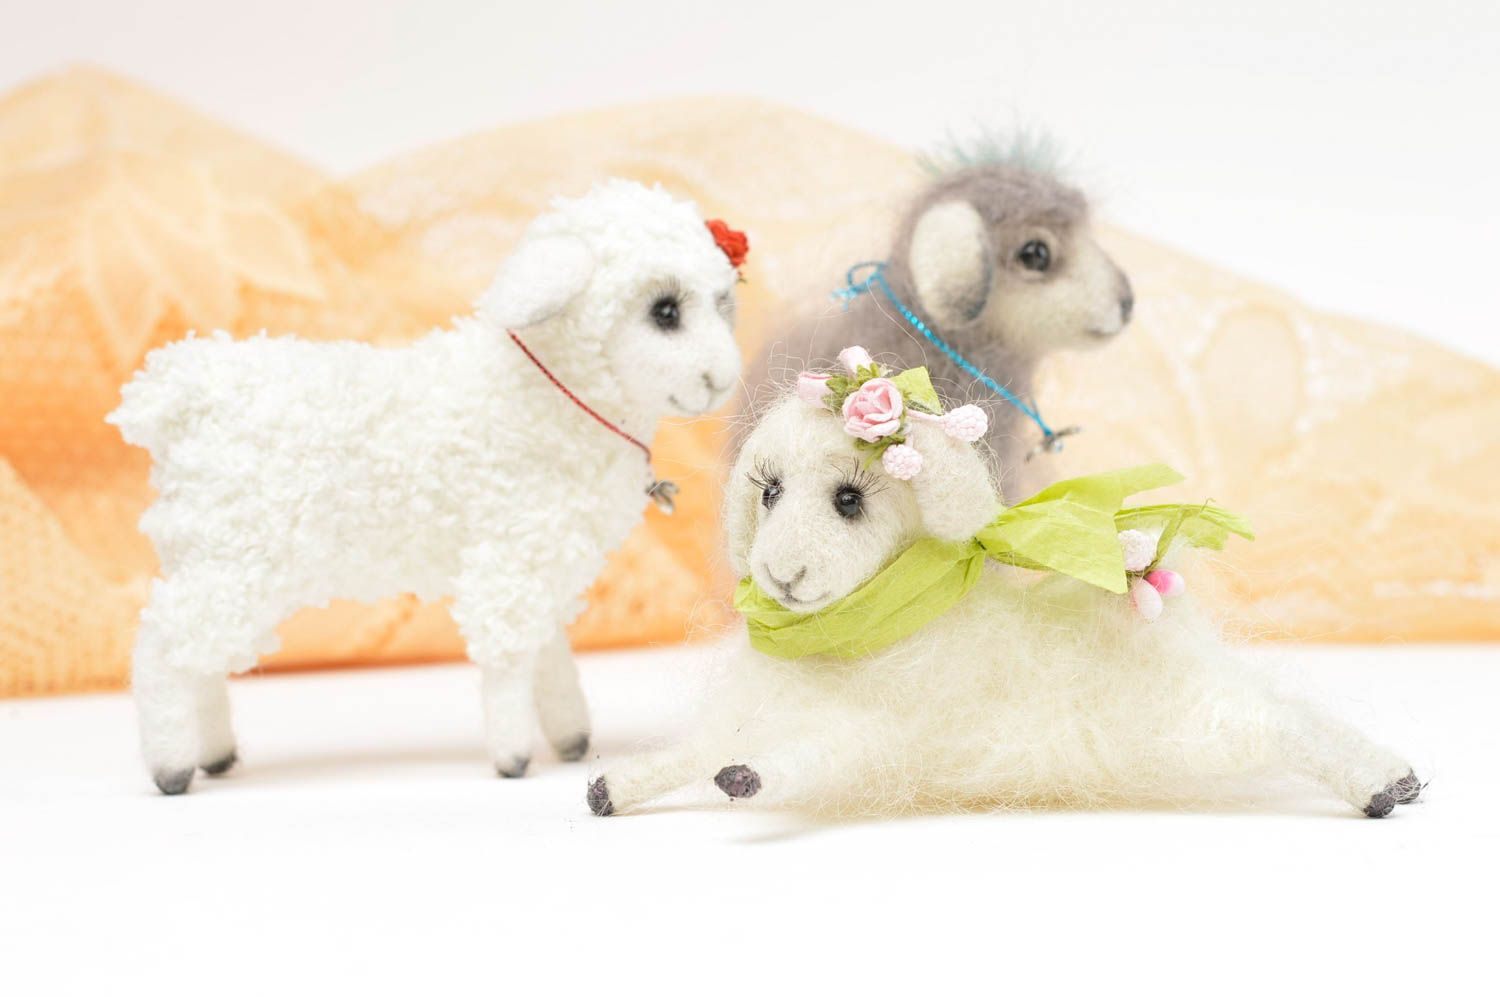 Handmade Spielzeug Set Stoff Tiere Geschenk Idee Kuschel Tiere Schafe schön foto 2